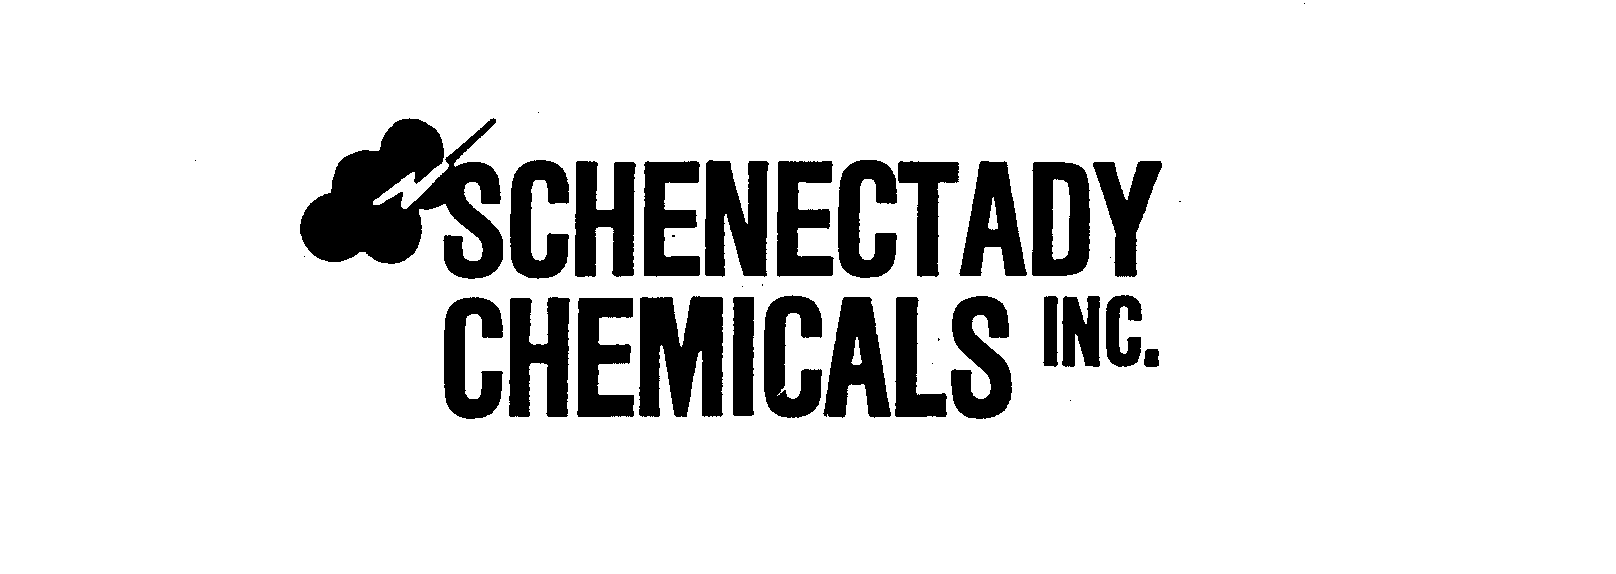  SCHENECTADY CHEMICALS INC.